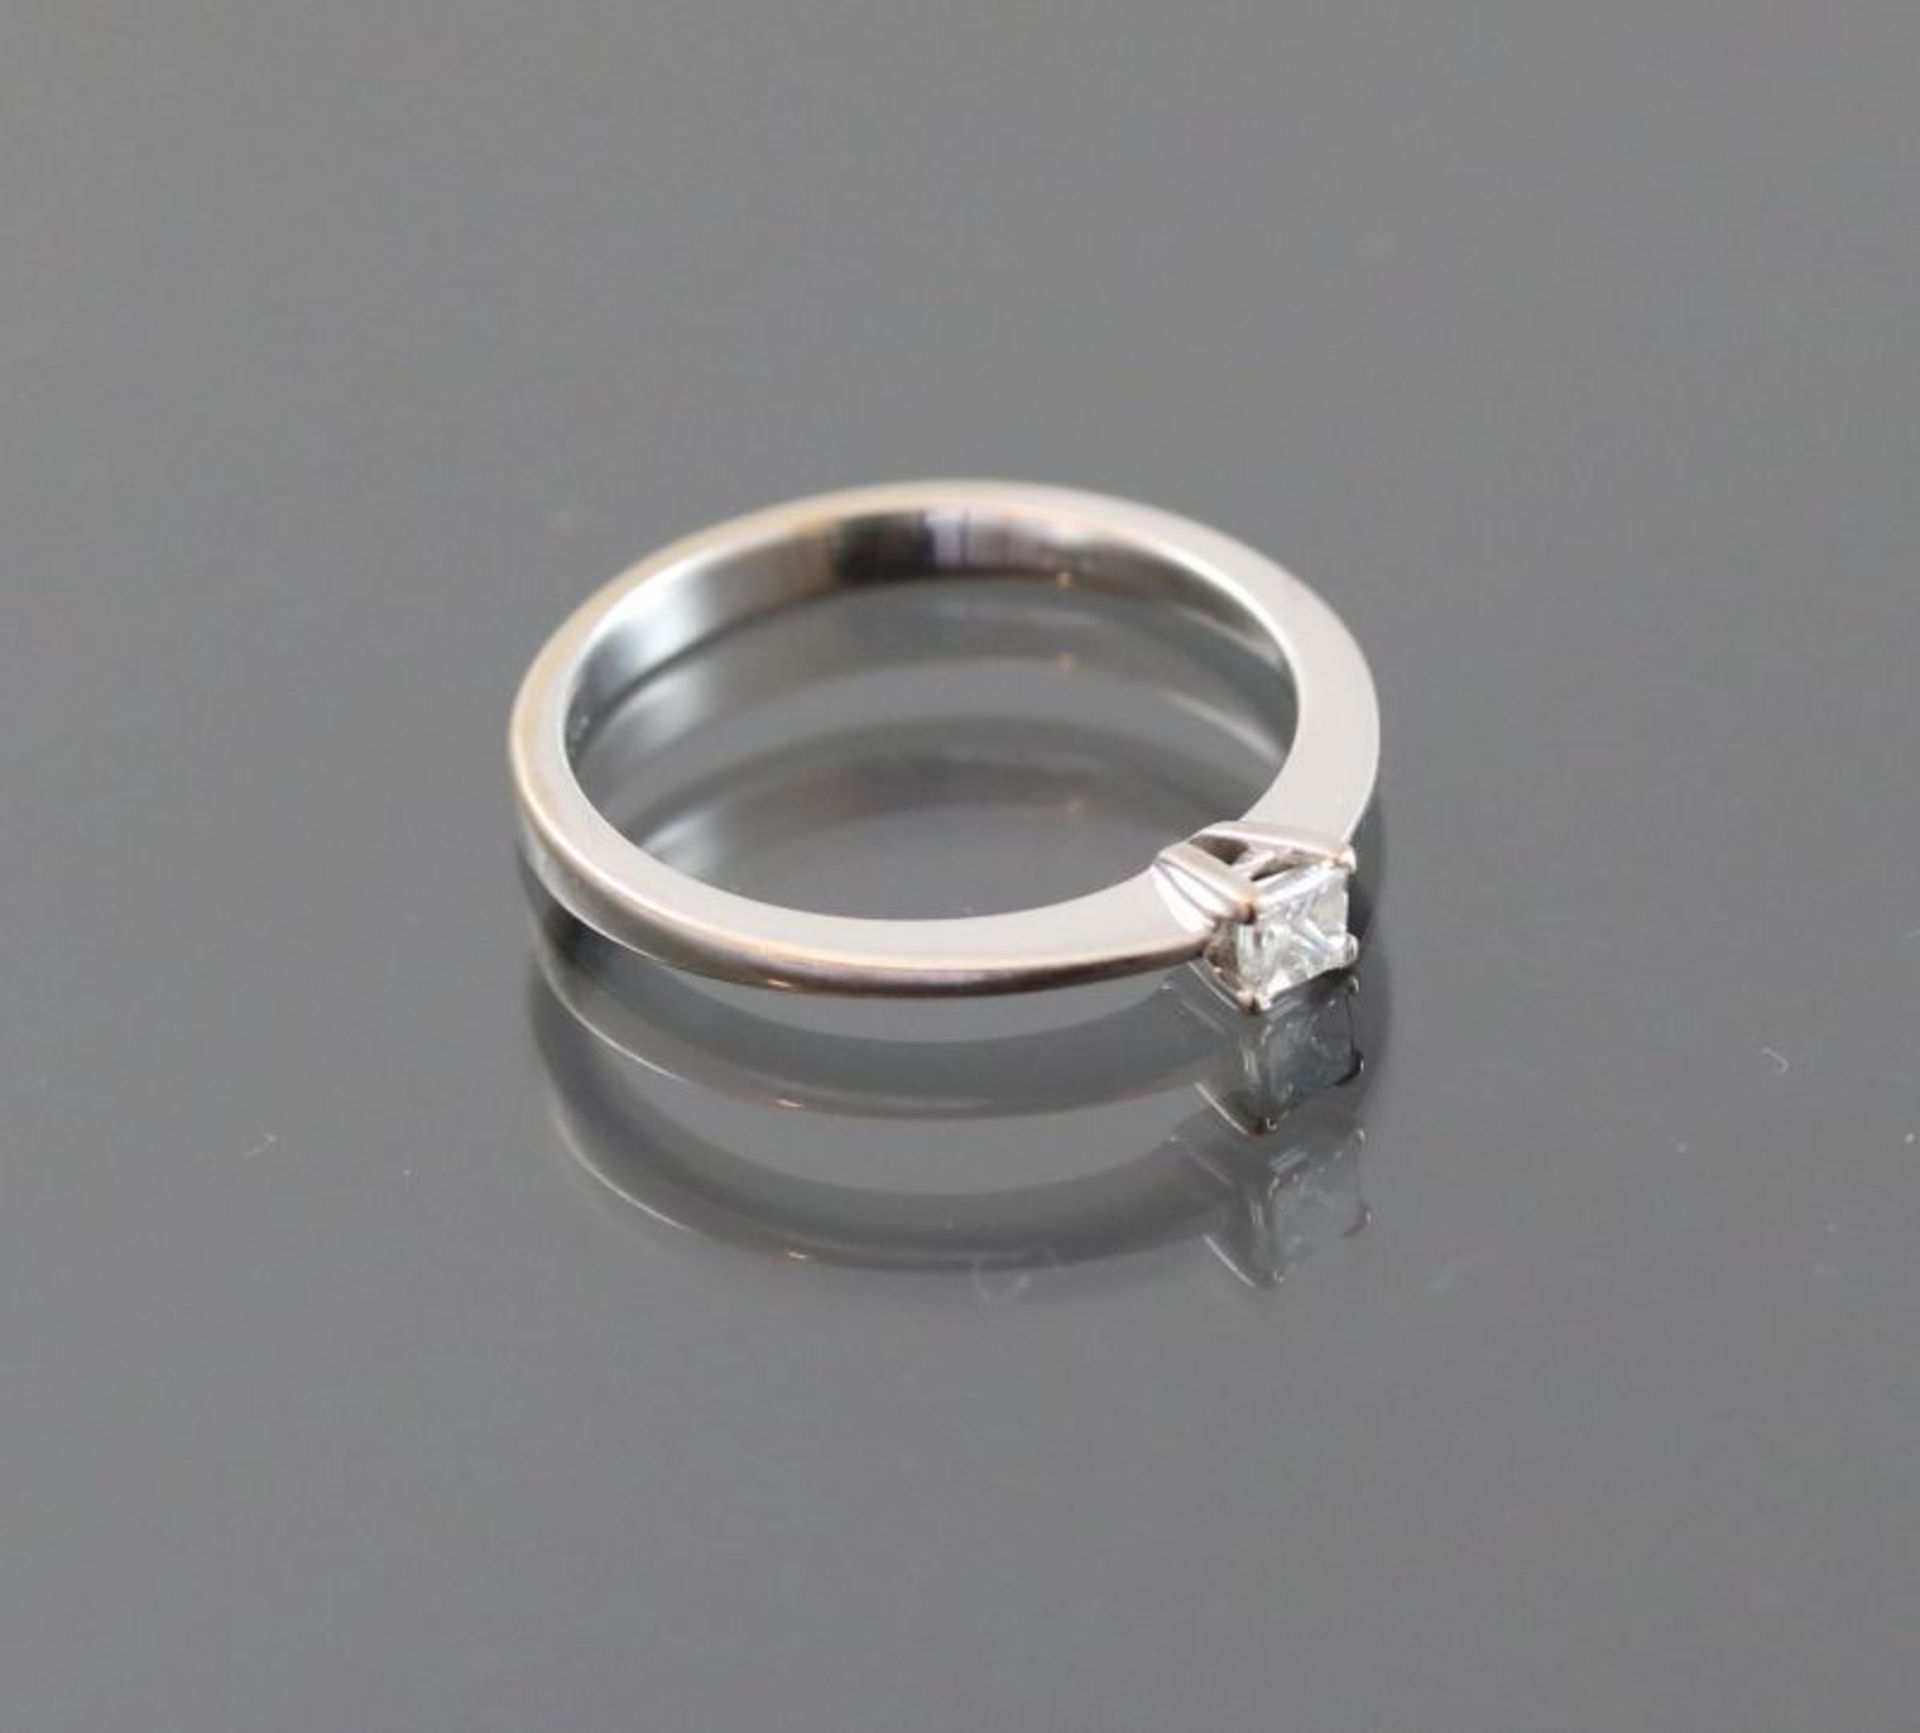 Diamant-Ring, 750 Weißgold2,5 Gramm 1 Diamantcarre, 0,15 ct., Ringgröße: 53,5Schätzpreis: 700,- - Bild 2 aus 3